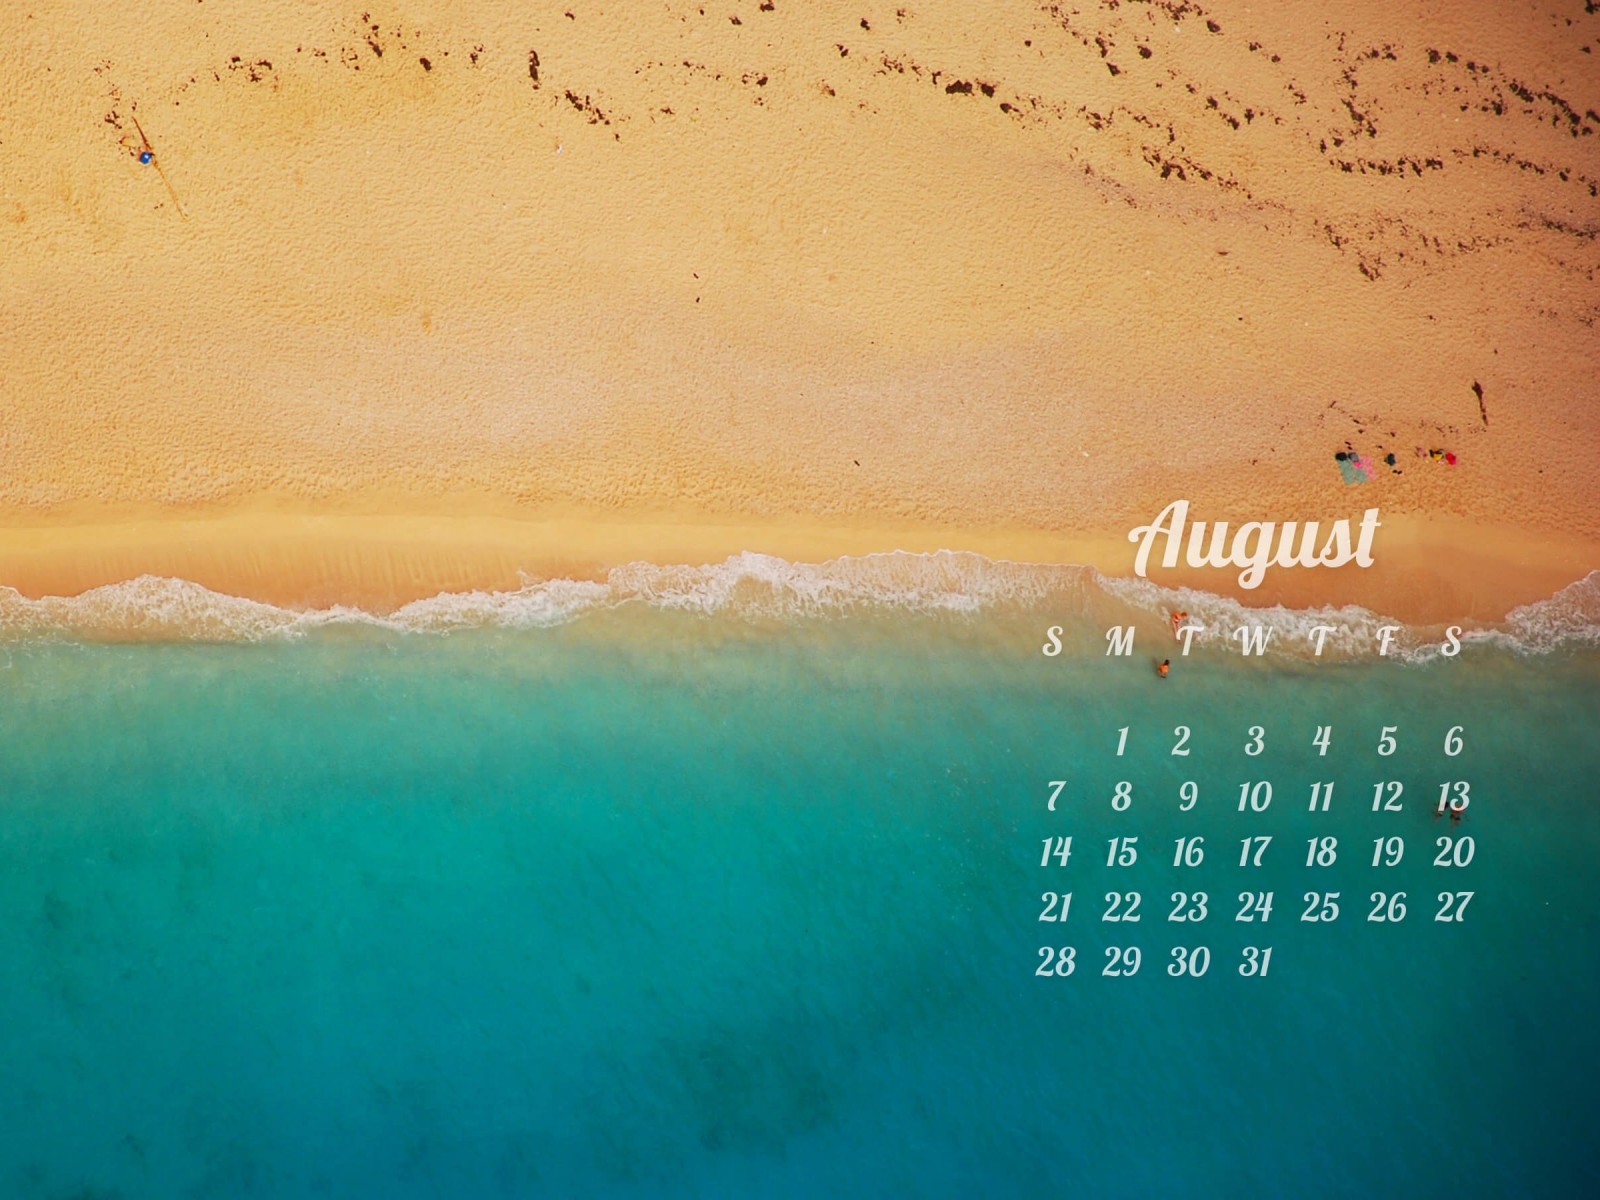 August 2016 Calendar Wallpaper for Desktop 1600x1200